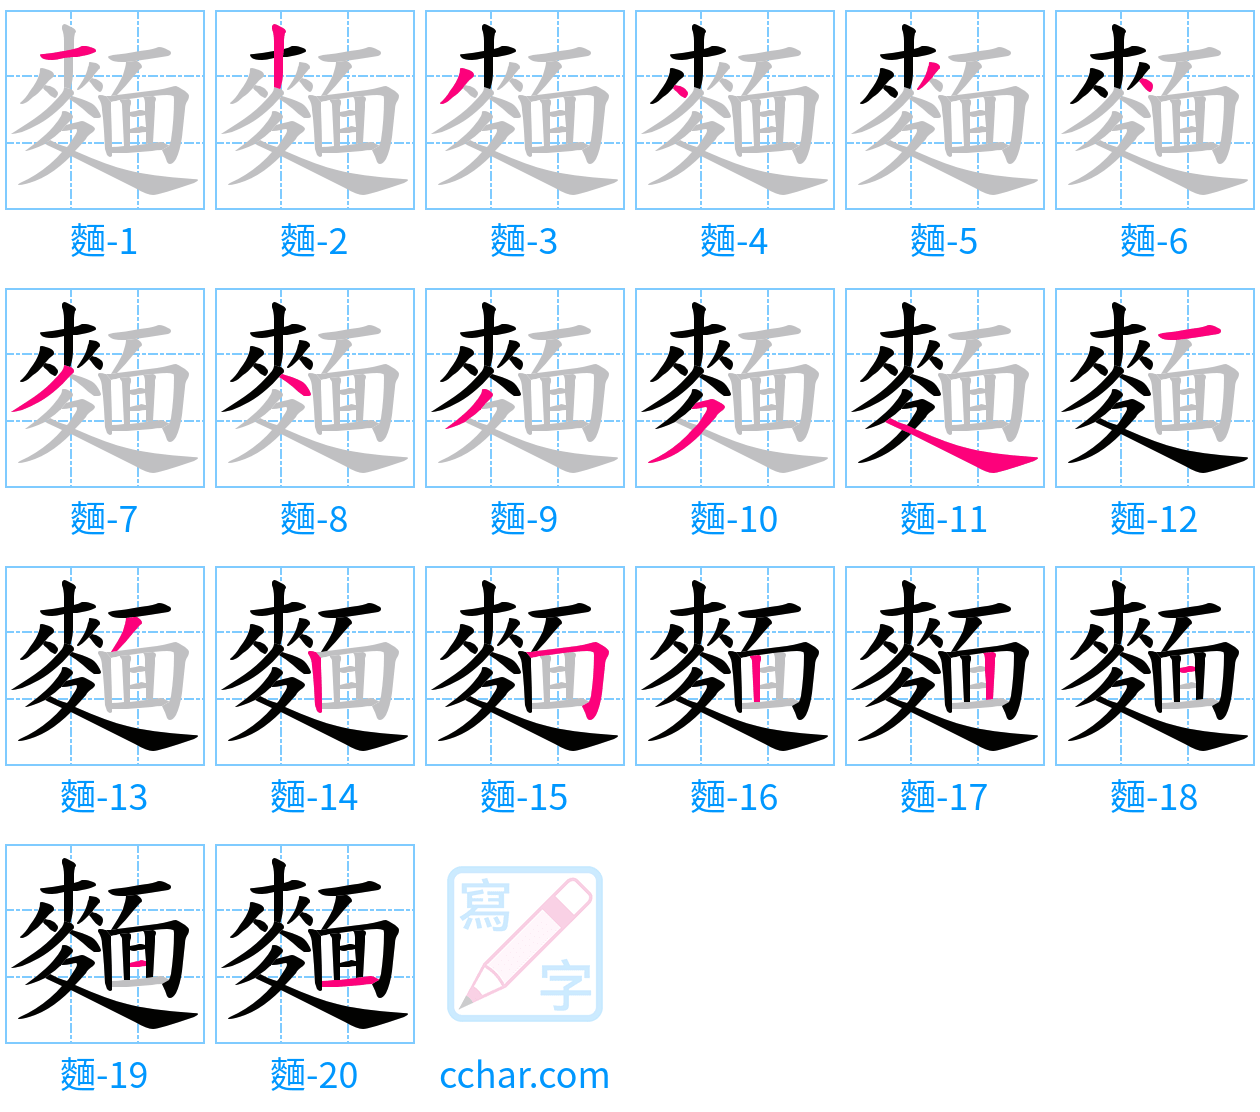 麵 stroke order step-by-step diagram